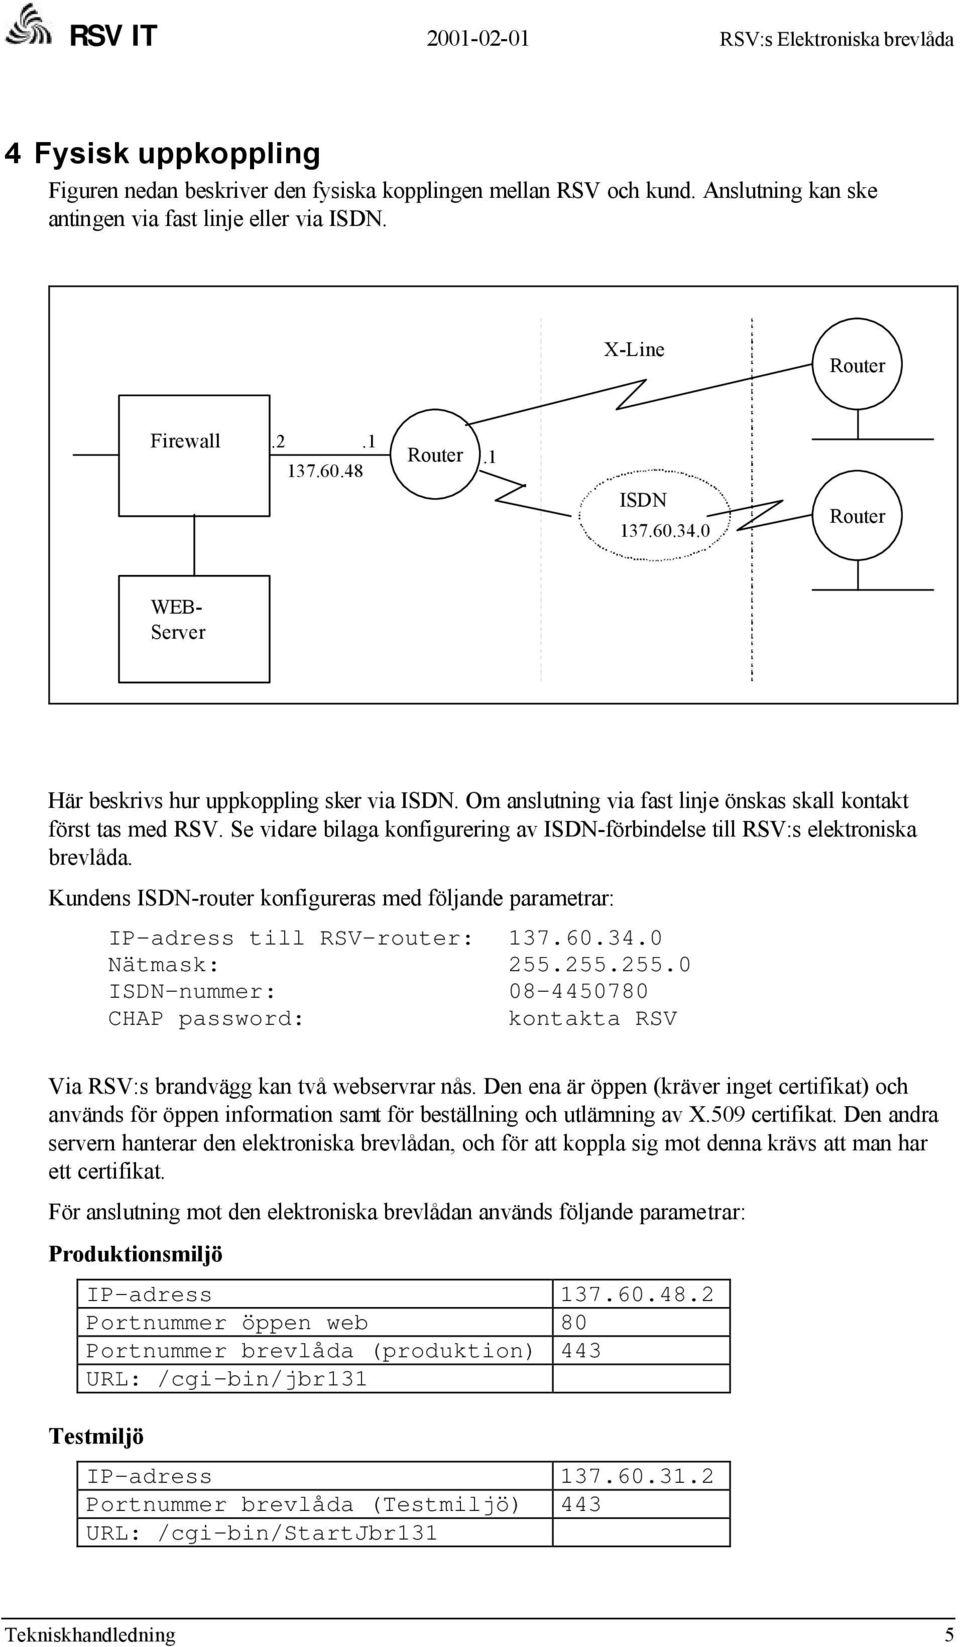 Se vidare bilaga konfigurering av ISDN-förbindelse till RSV:s elektroniska brevlåda. Kundens ISDN-router konfigureras med följande parametrar: IP-adress till RSV-router: 137.60.34.0 Nätmask: 255.